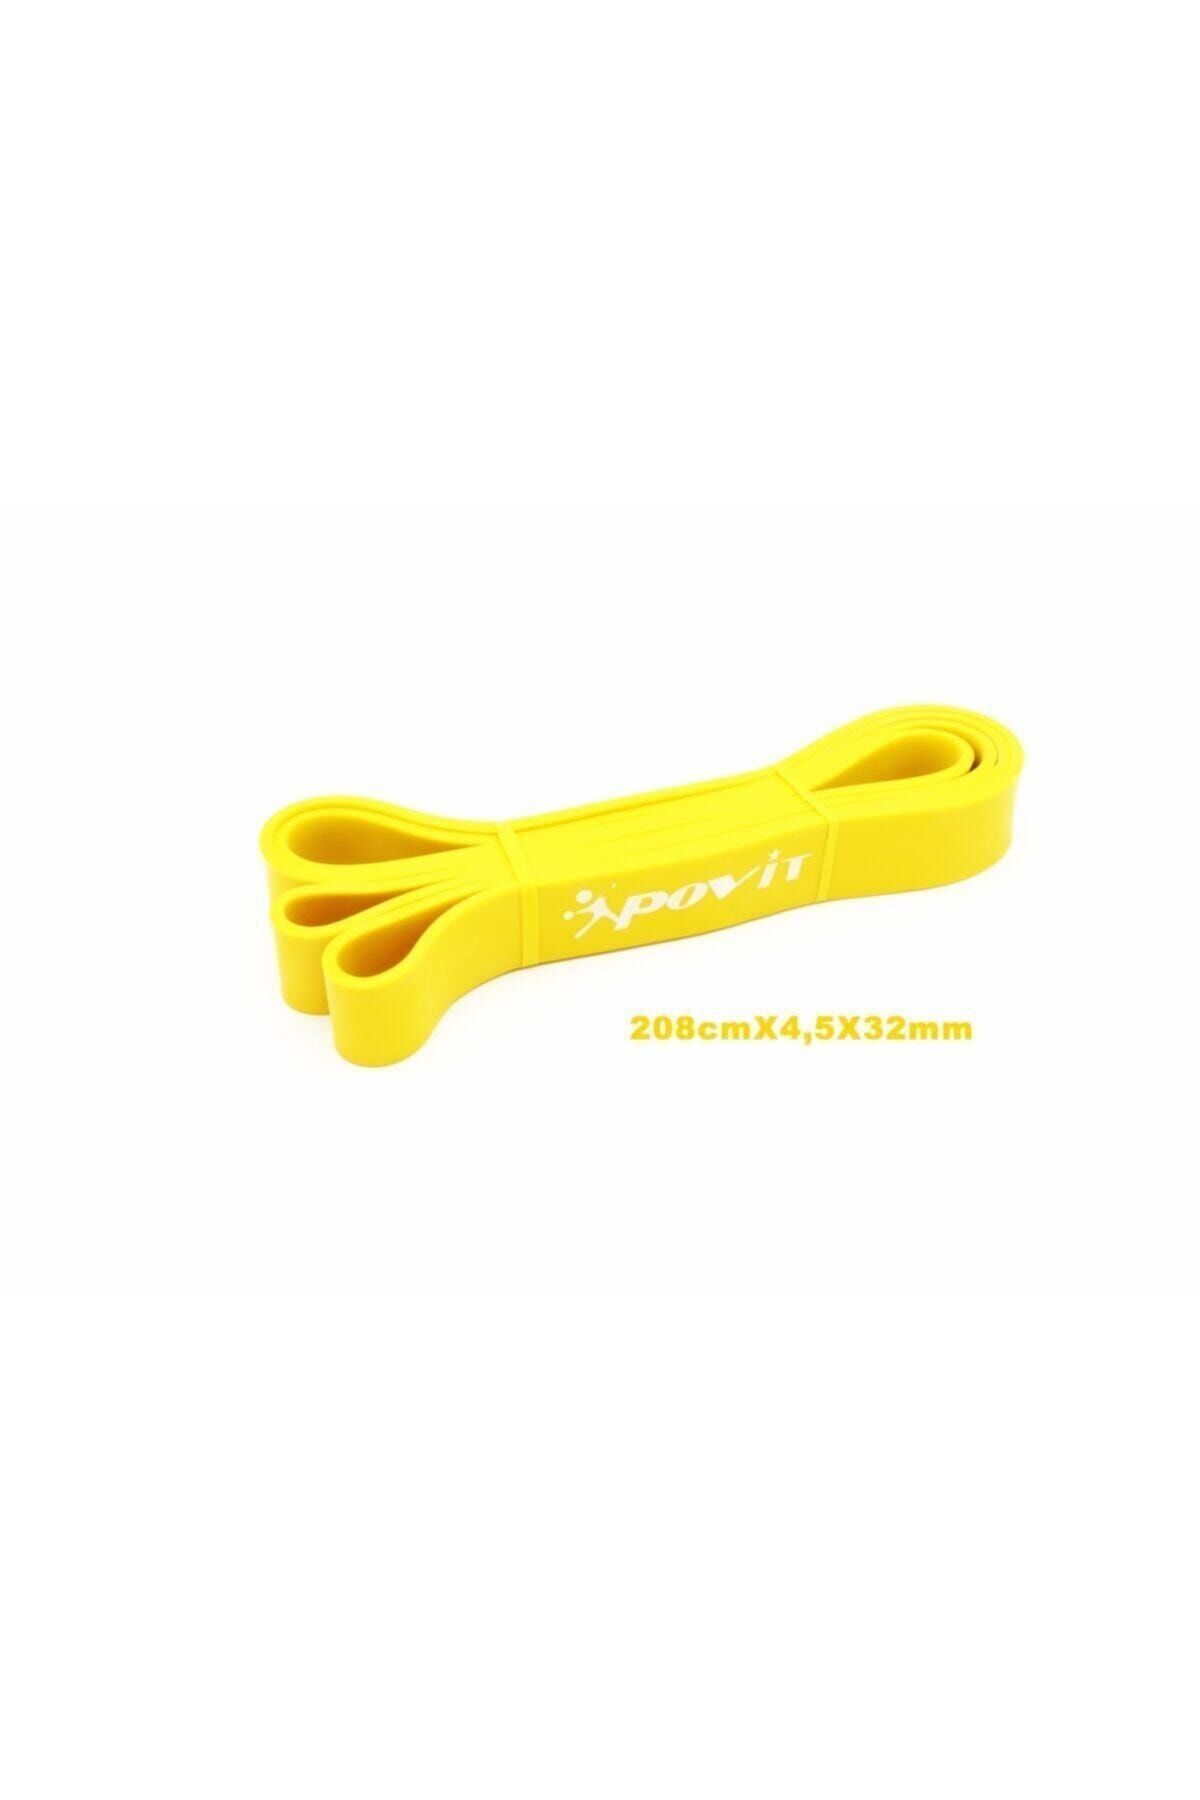 Povit Latex Güç Bandı Direnç Lastiği Sert Sarı Renk Nts2021lks99-s